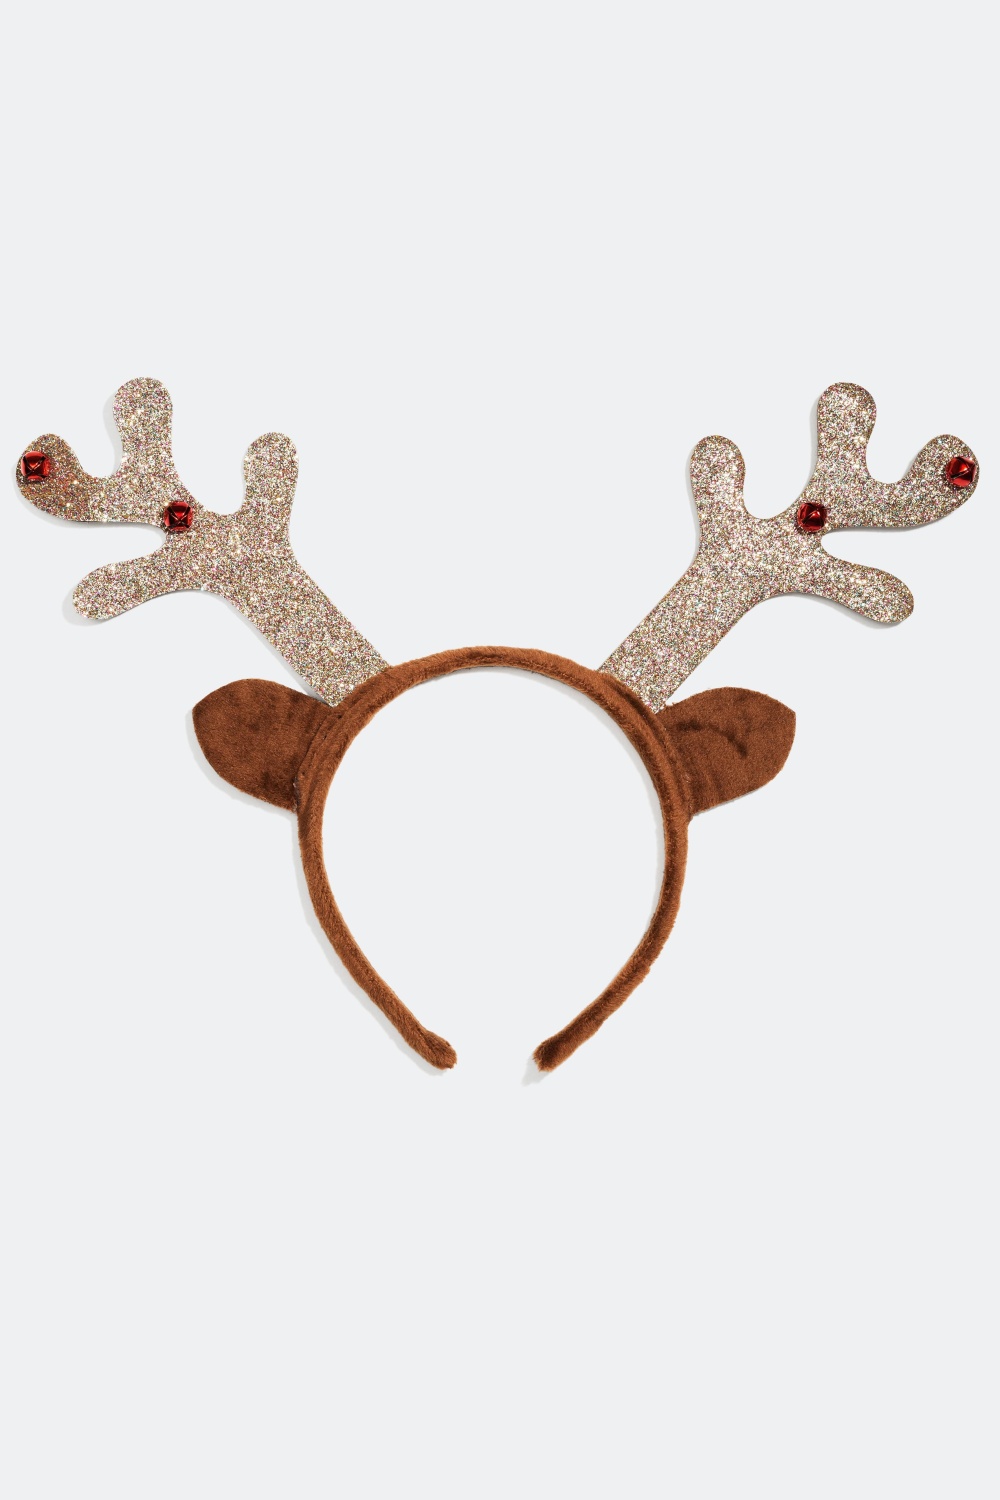 Hårbøyle med horn til jul i gruppen Jul / Christmas Collection hos Glitter (317854)